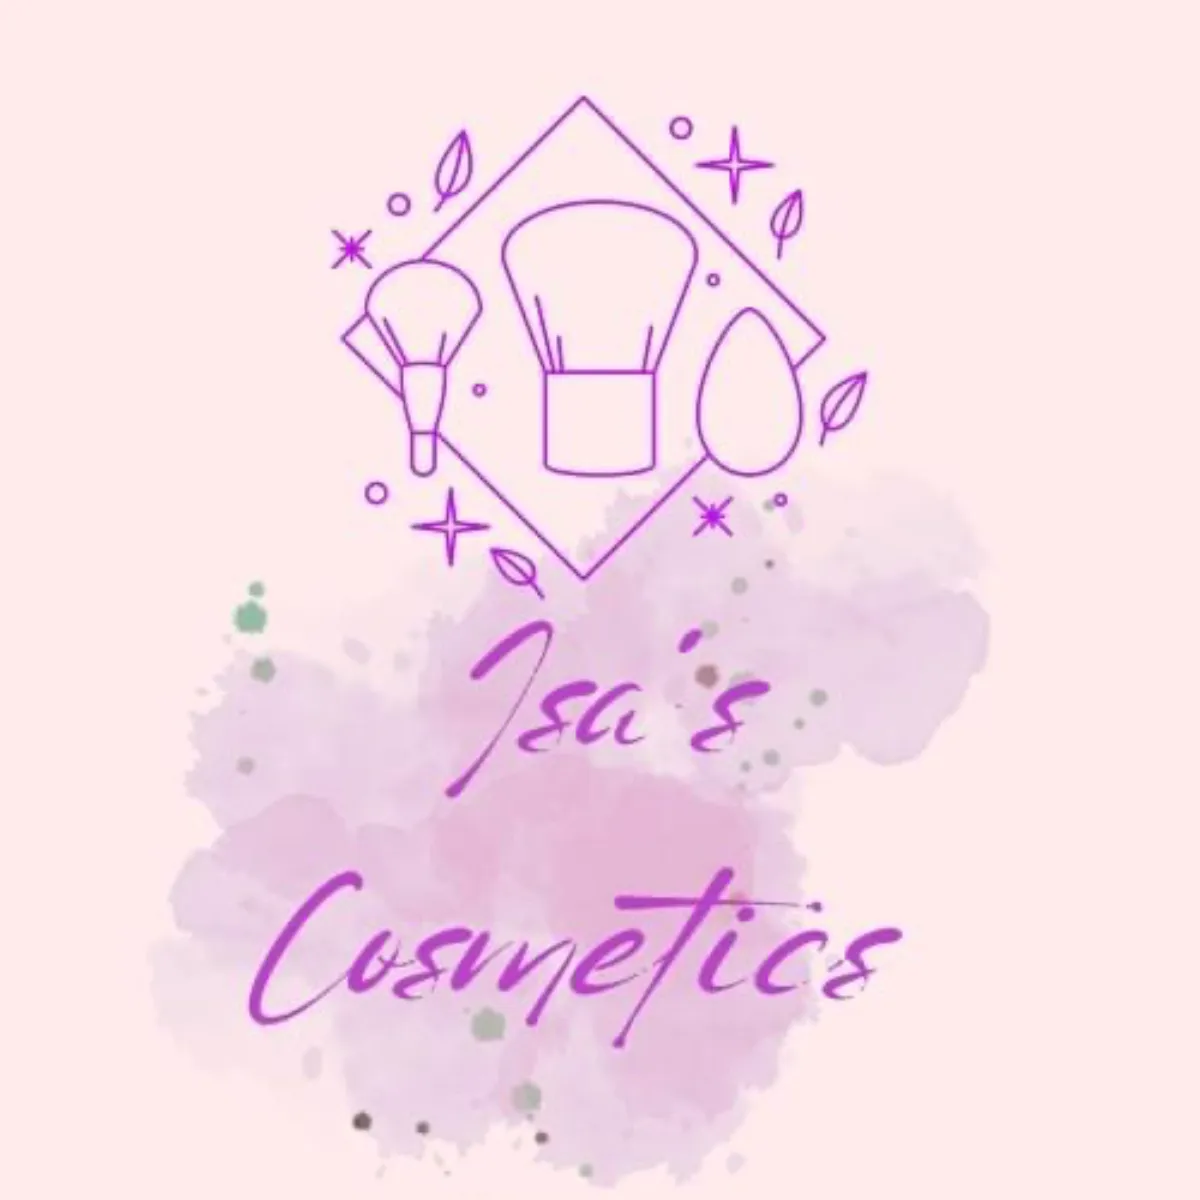 Isa’s Cosmetics